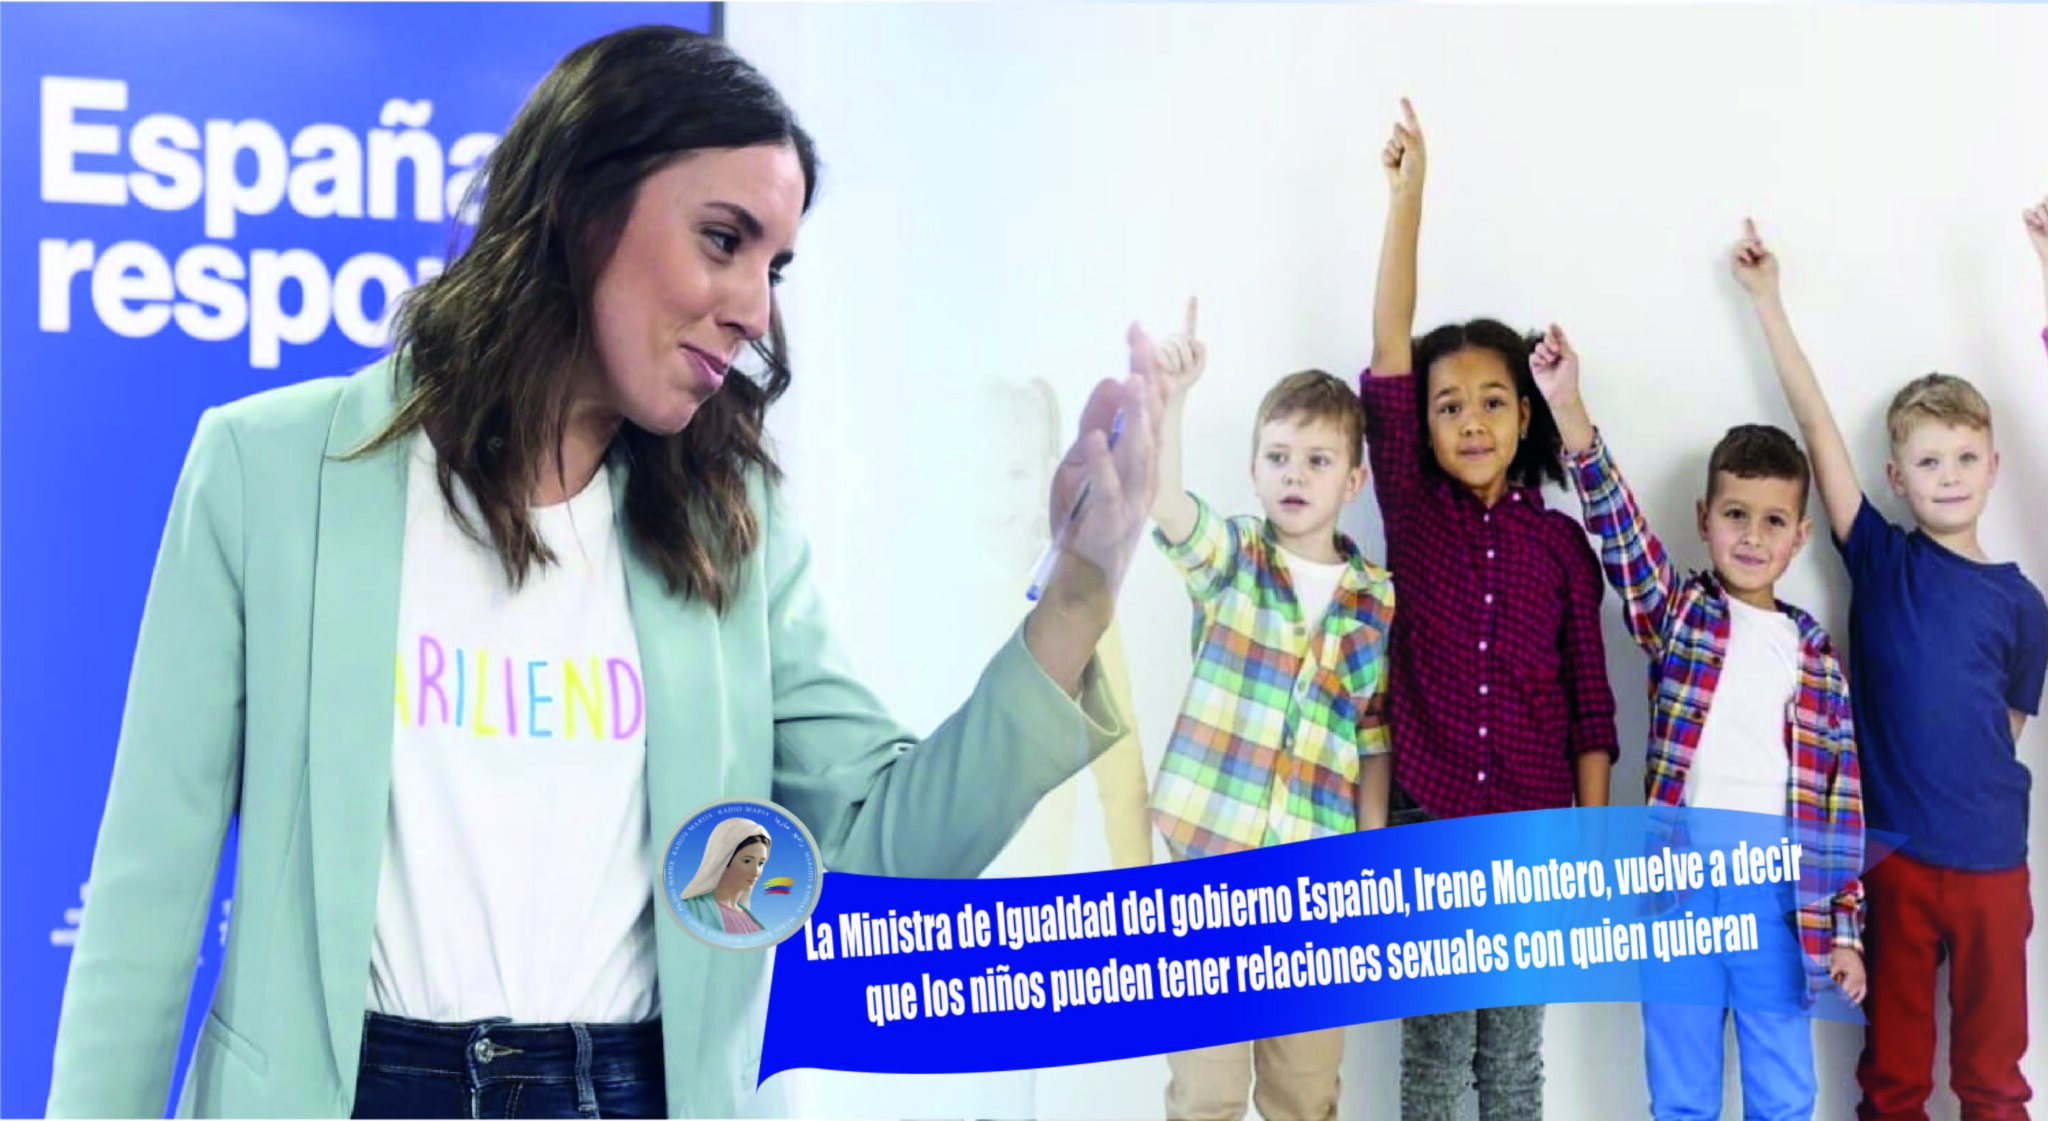 La Ministra De Igualdad Del Gobierno Español Irene Montero Vuelve A Decir Que Los Niños Pueden 7753